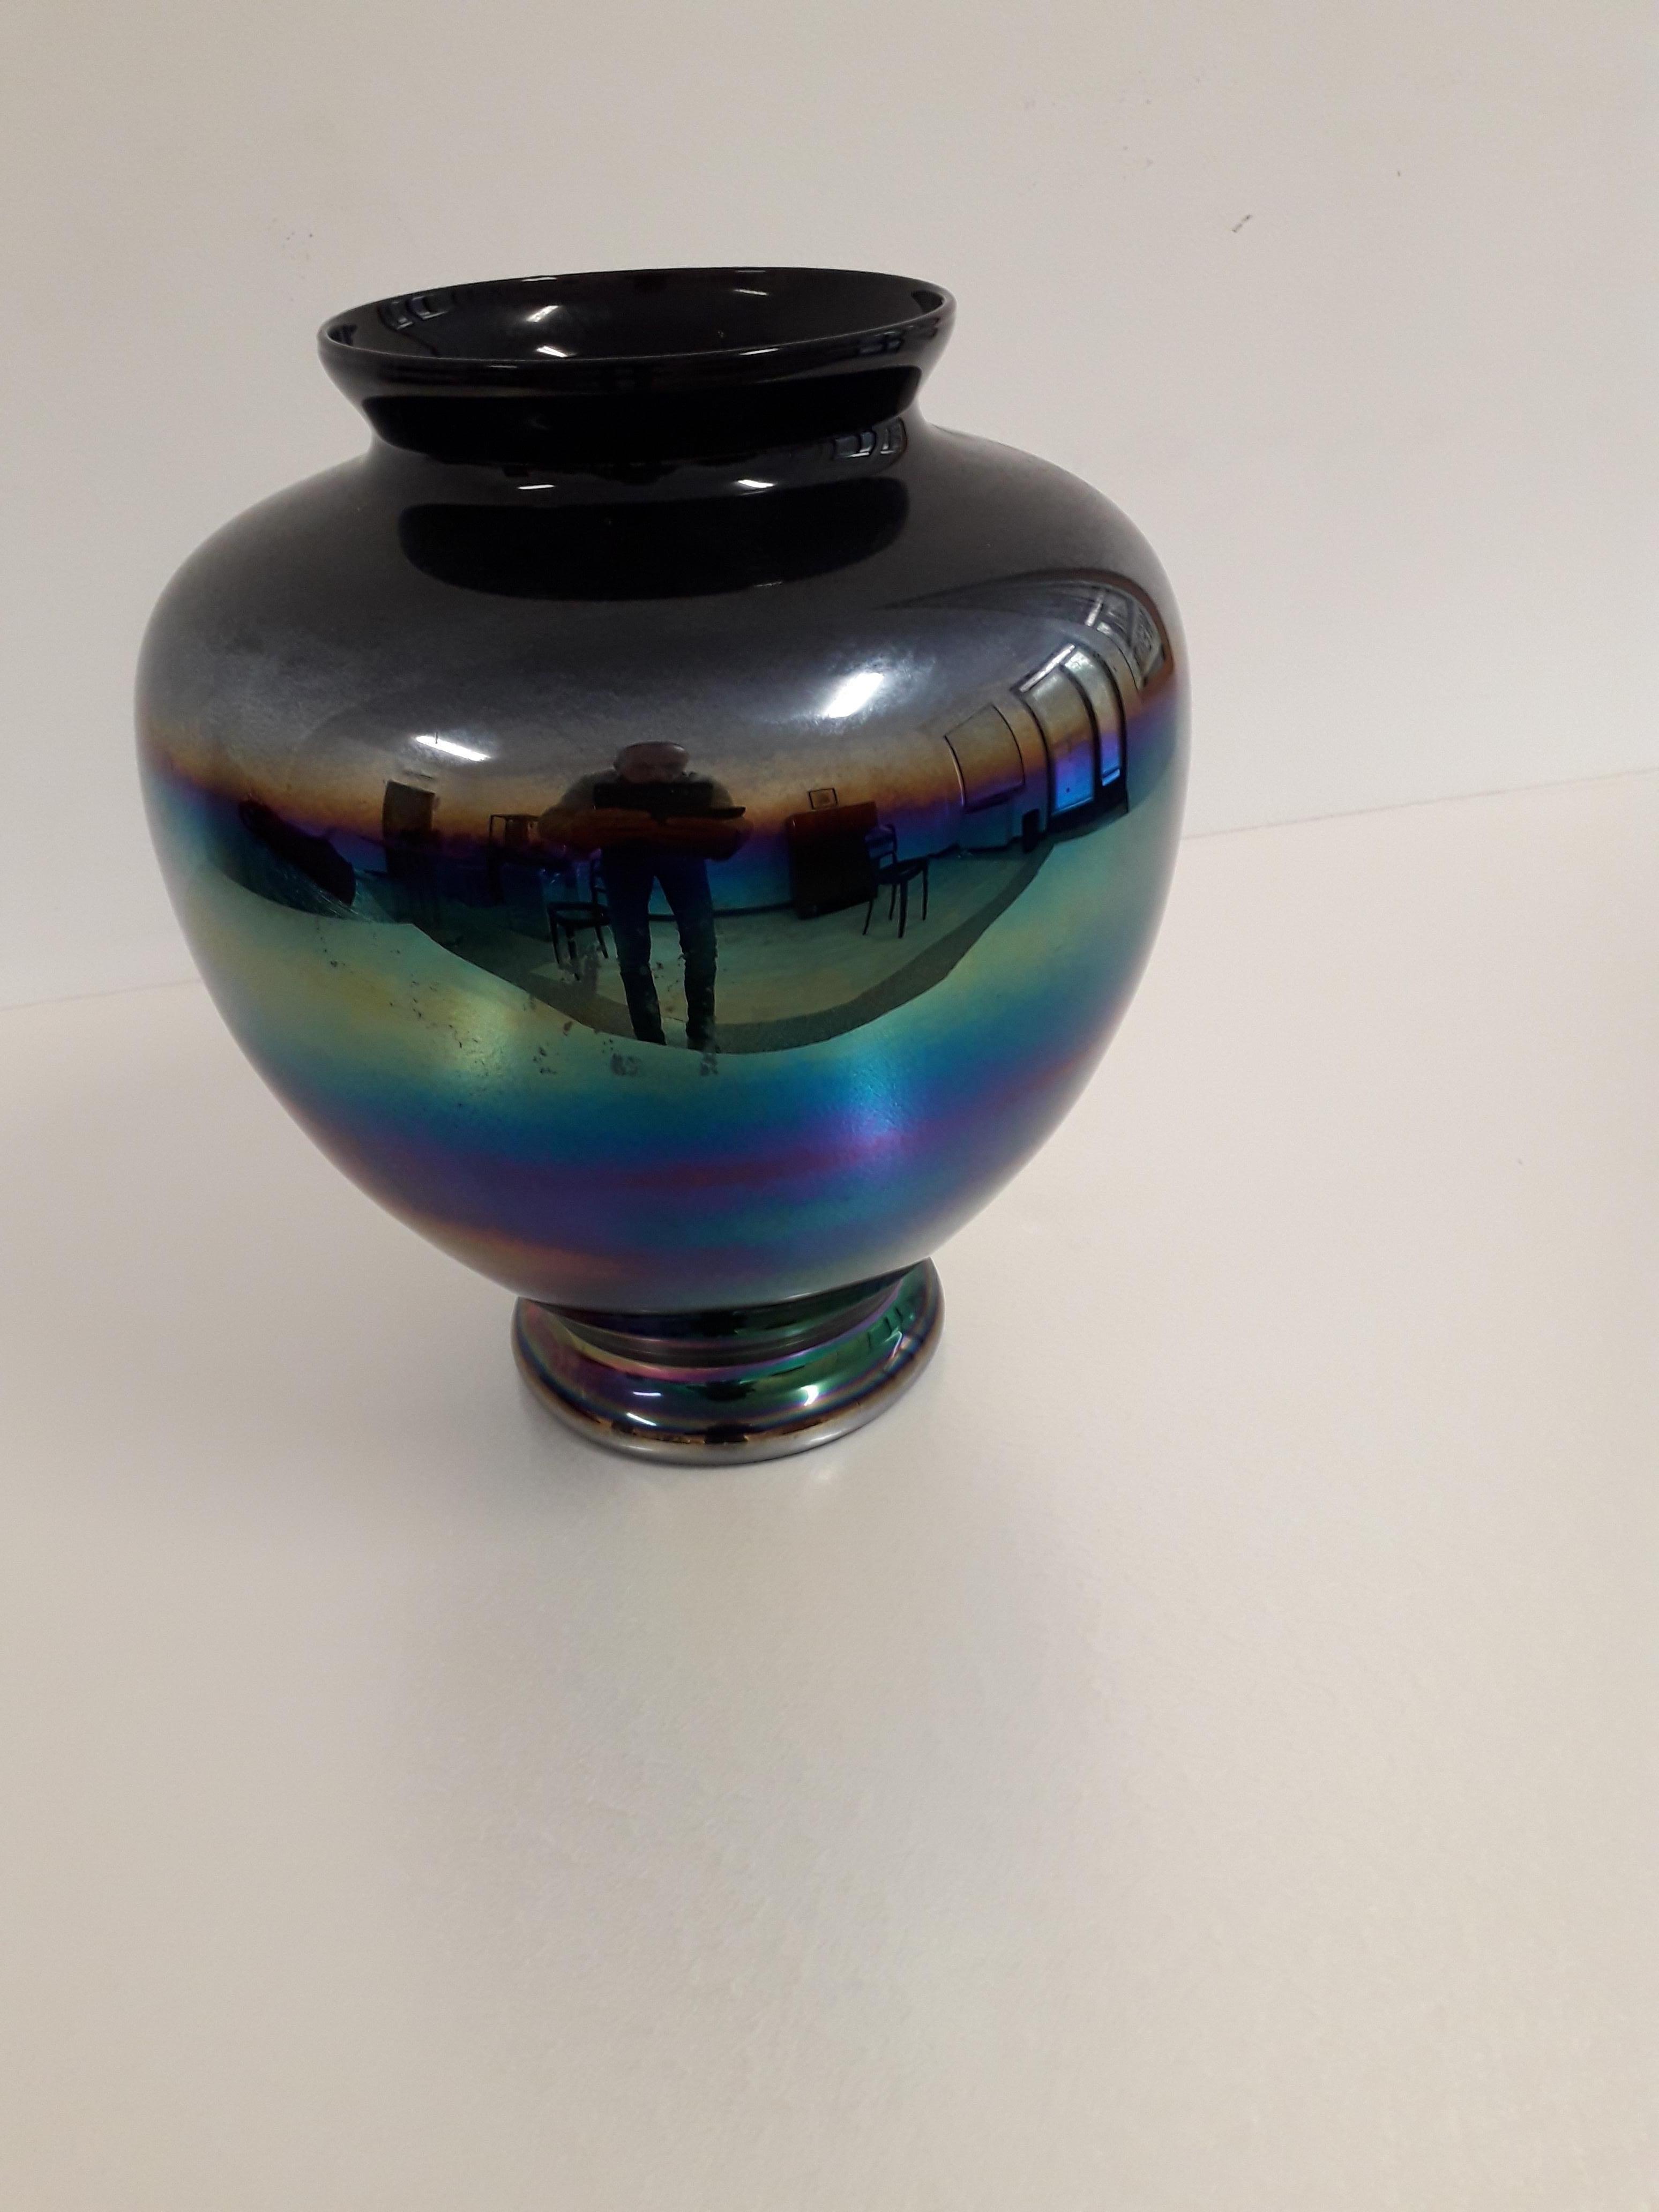 Bellissimo Vaso di Murano di Vetro eosina che da un effetto iridescente
representando los colores del iris y los riflessi mobili e cangianti.
¡En perfectas condiciones!